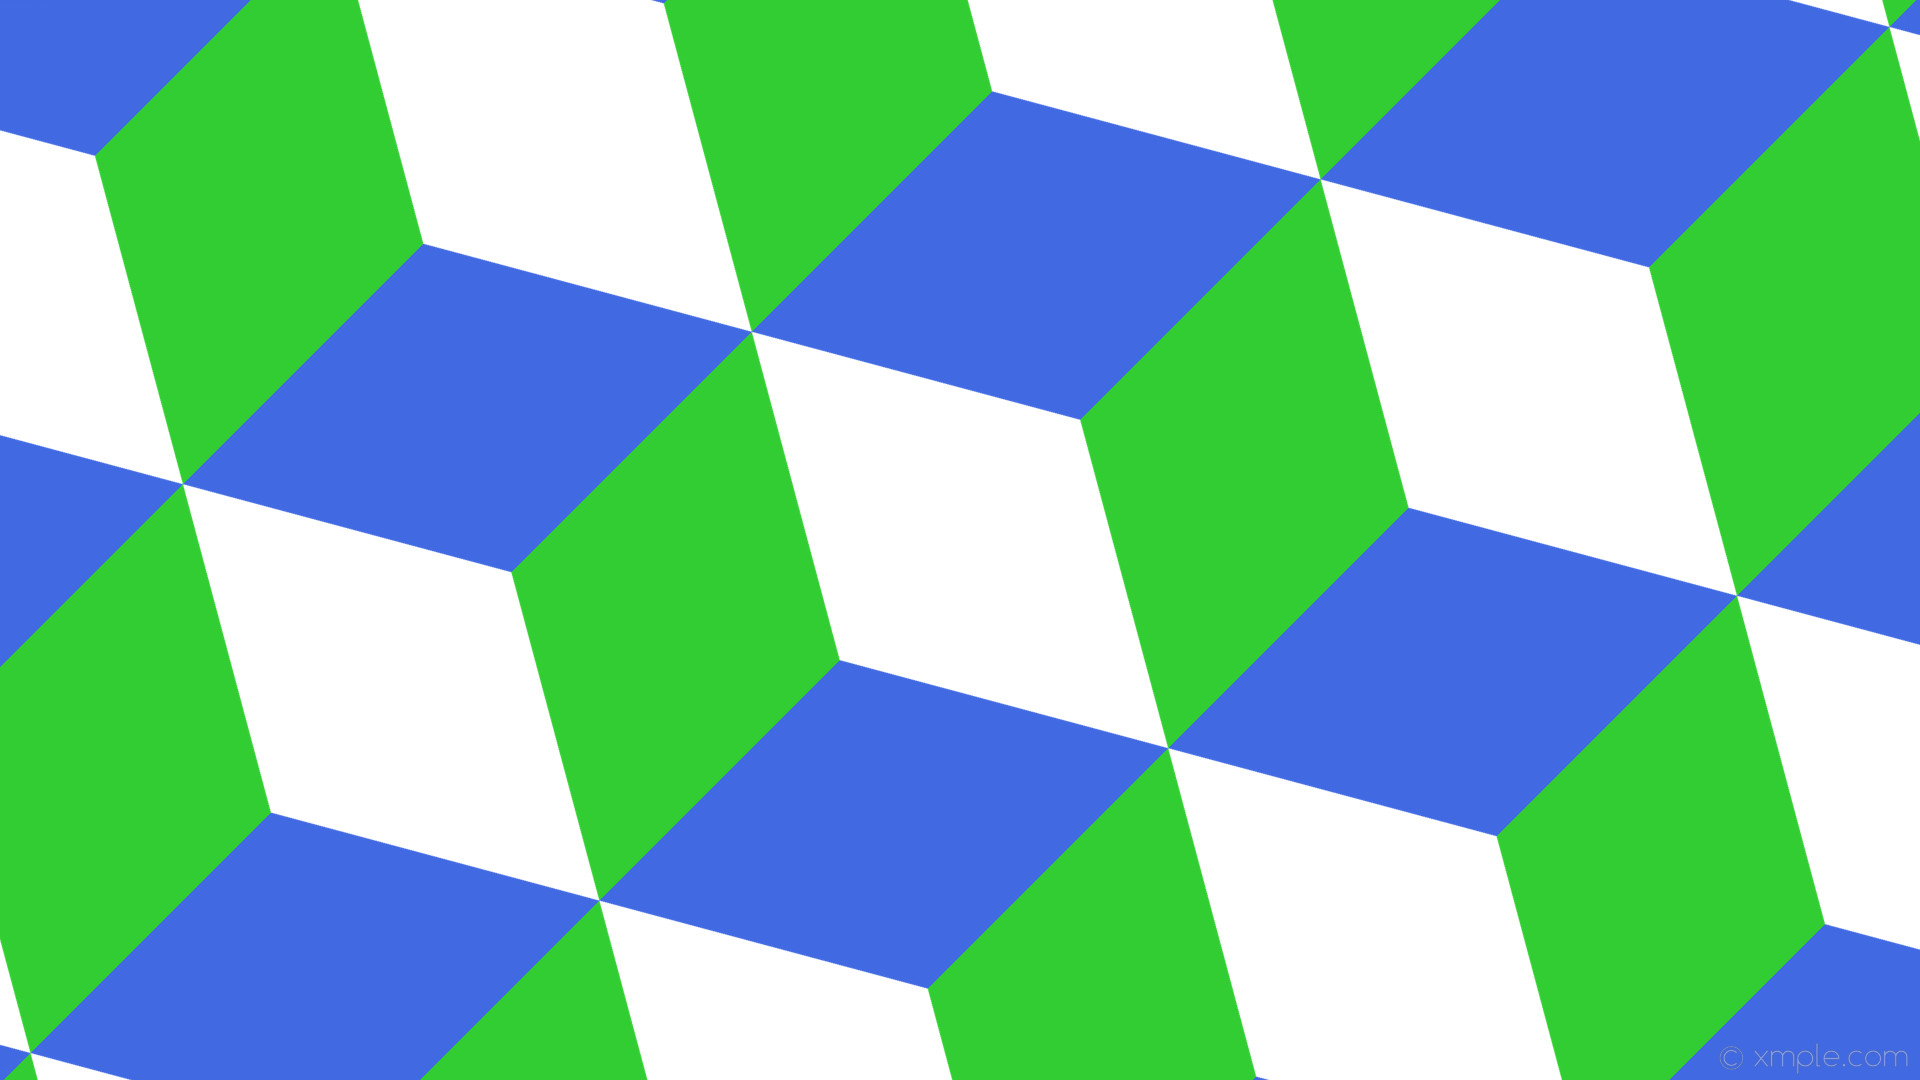 1920x1080 wallpaper green 3d cubes blue white lime green royal blue #ffffff #32cd32  #4169e1